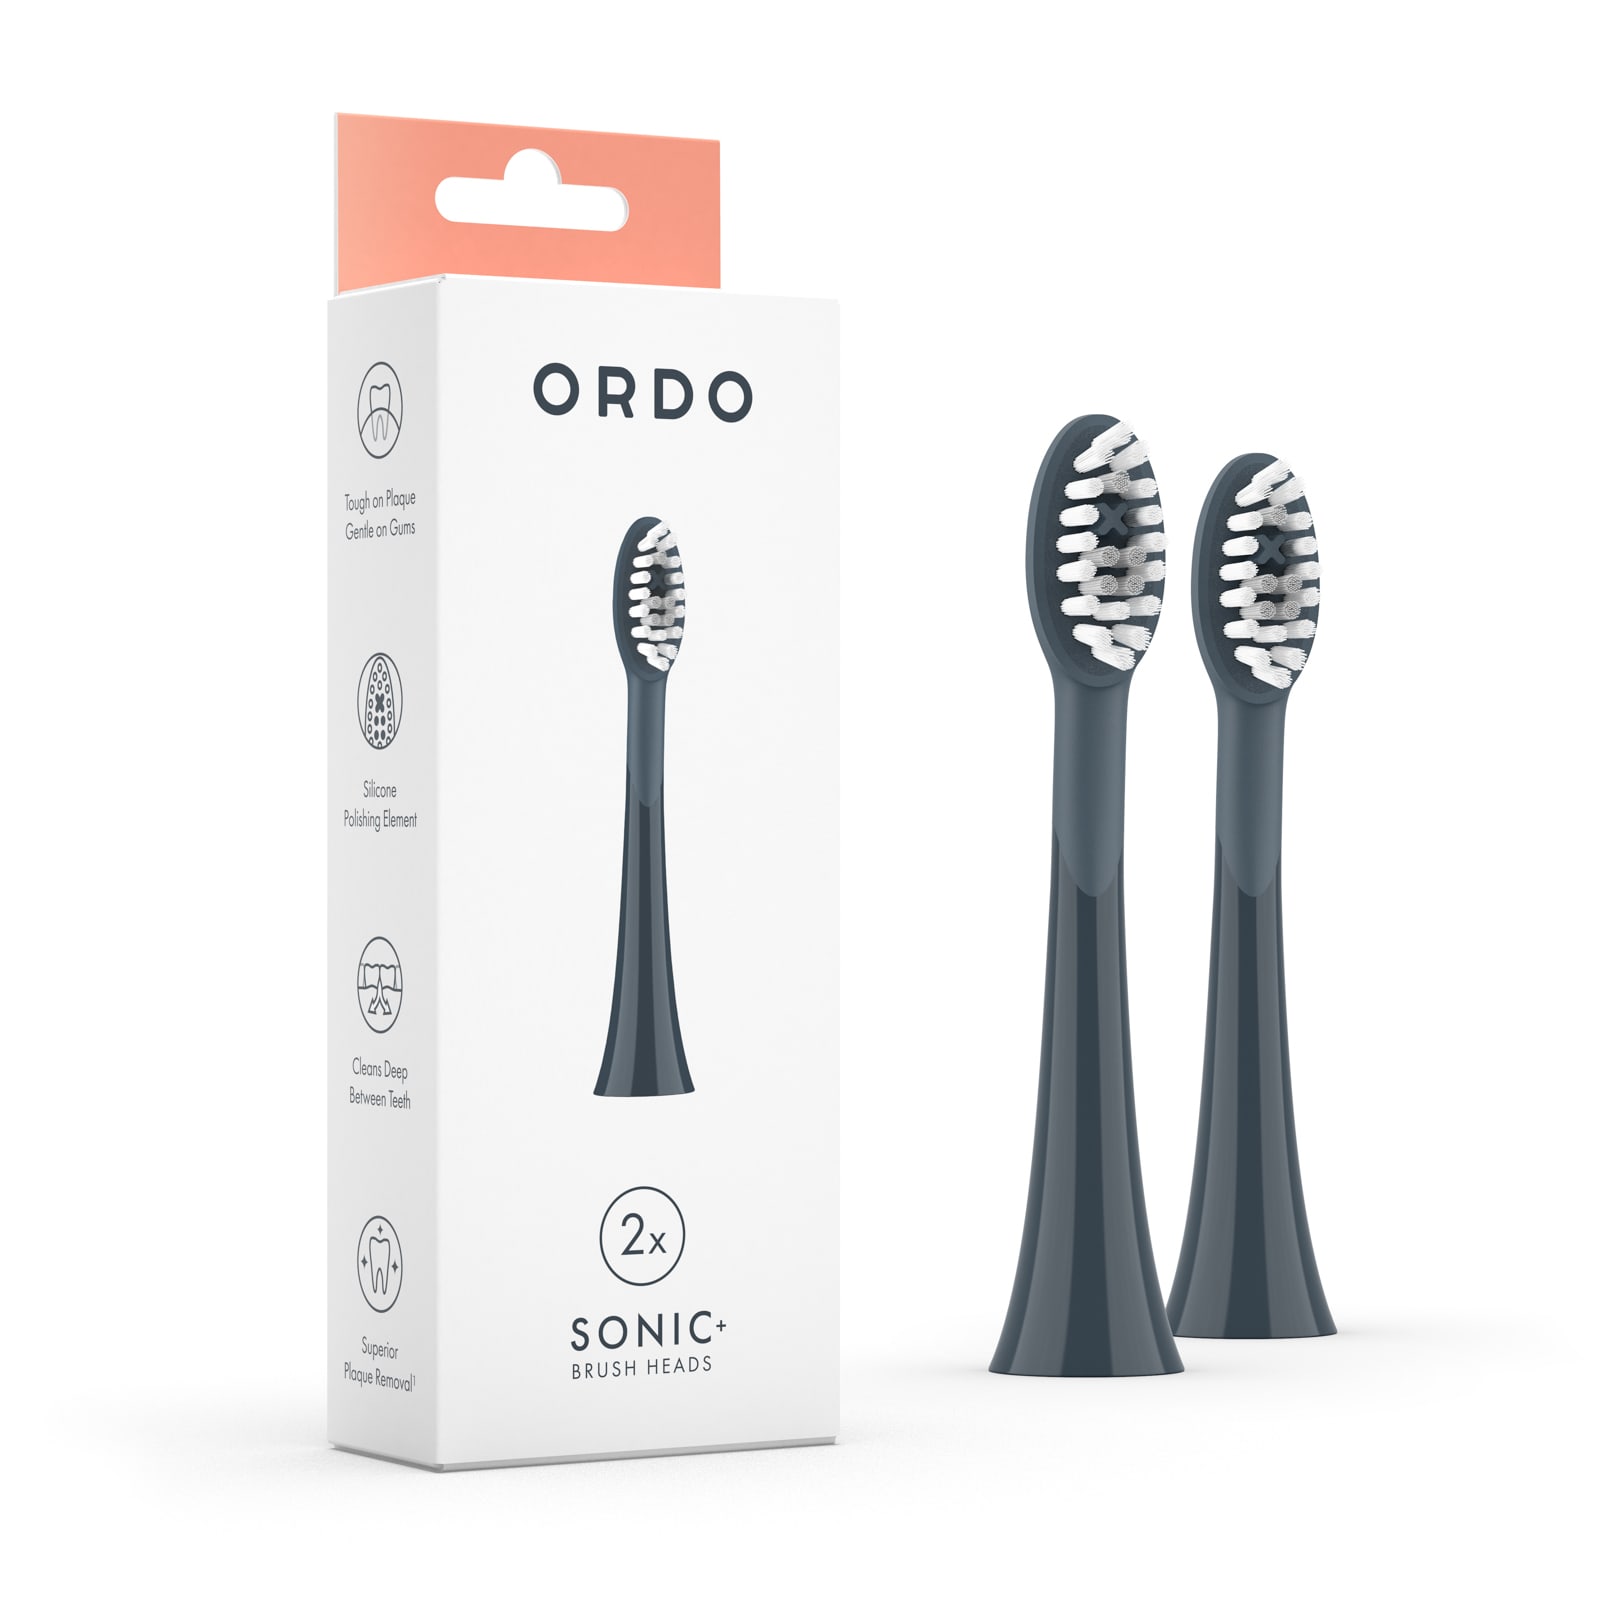 Насадка для электрической зубной щетки ORDO Sonic+ насадка для электрической зубной щетки ordo sonic